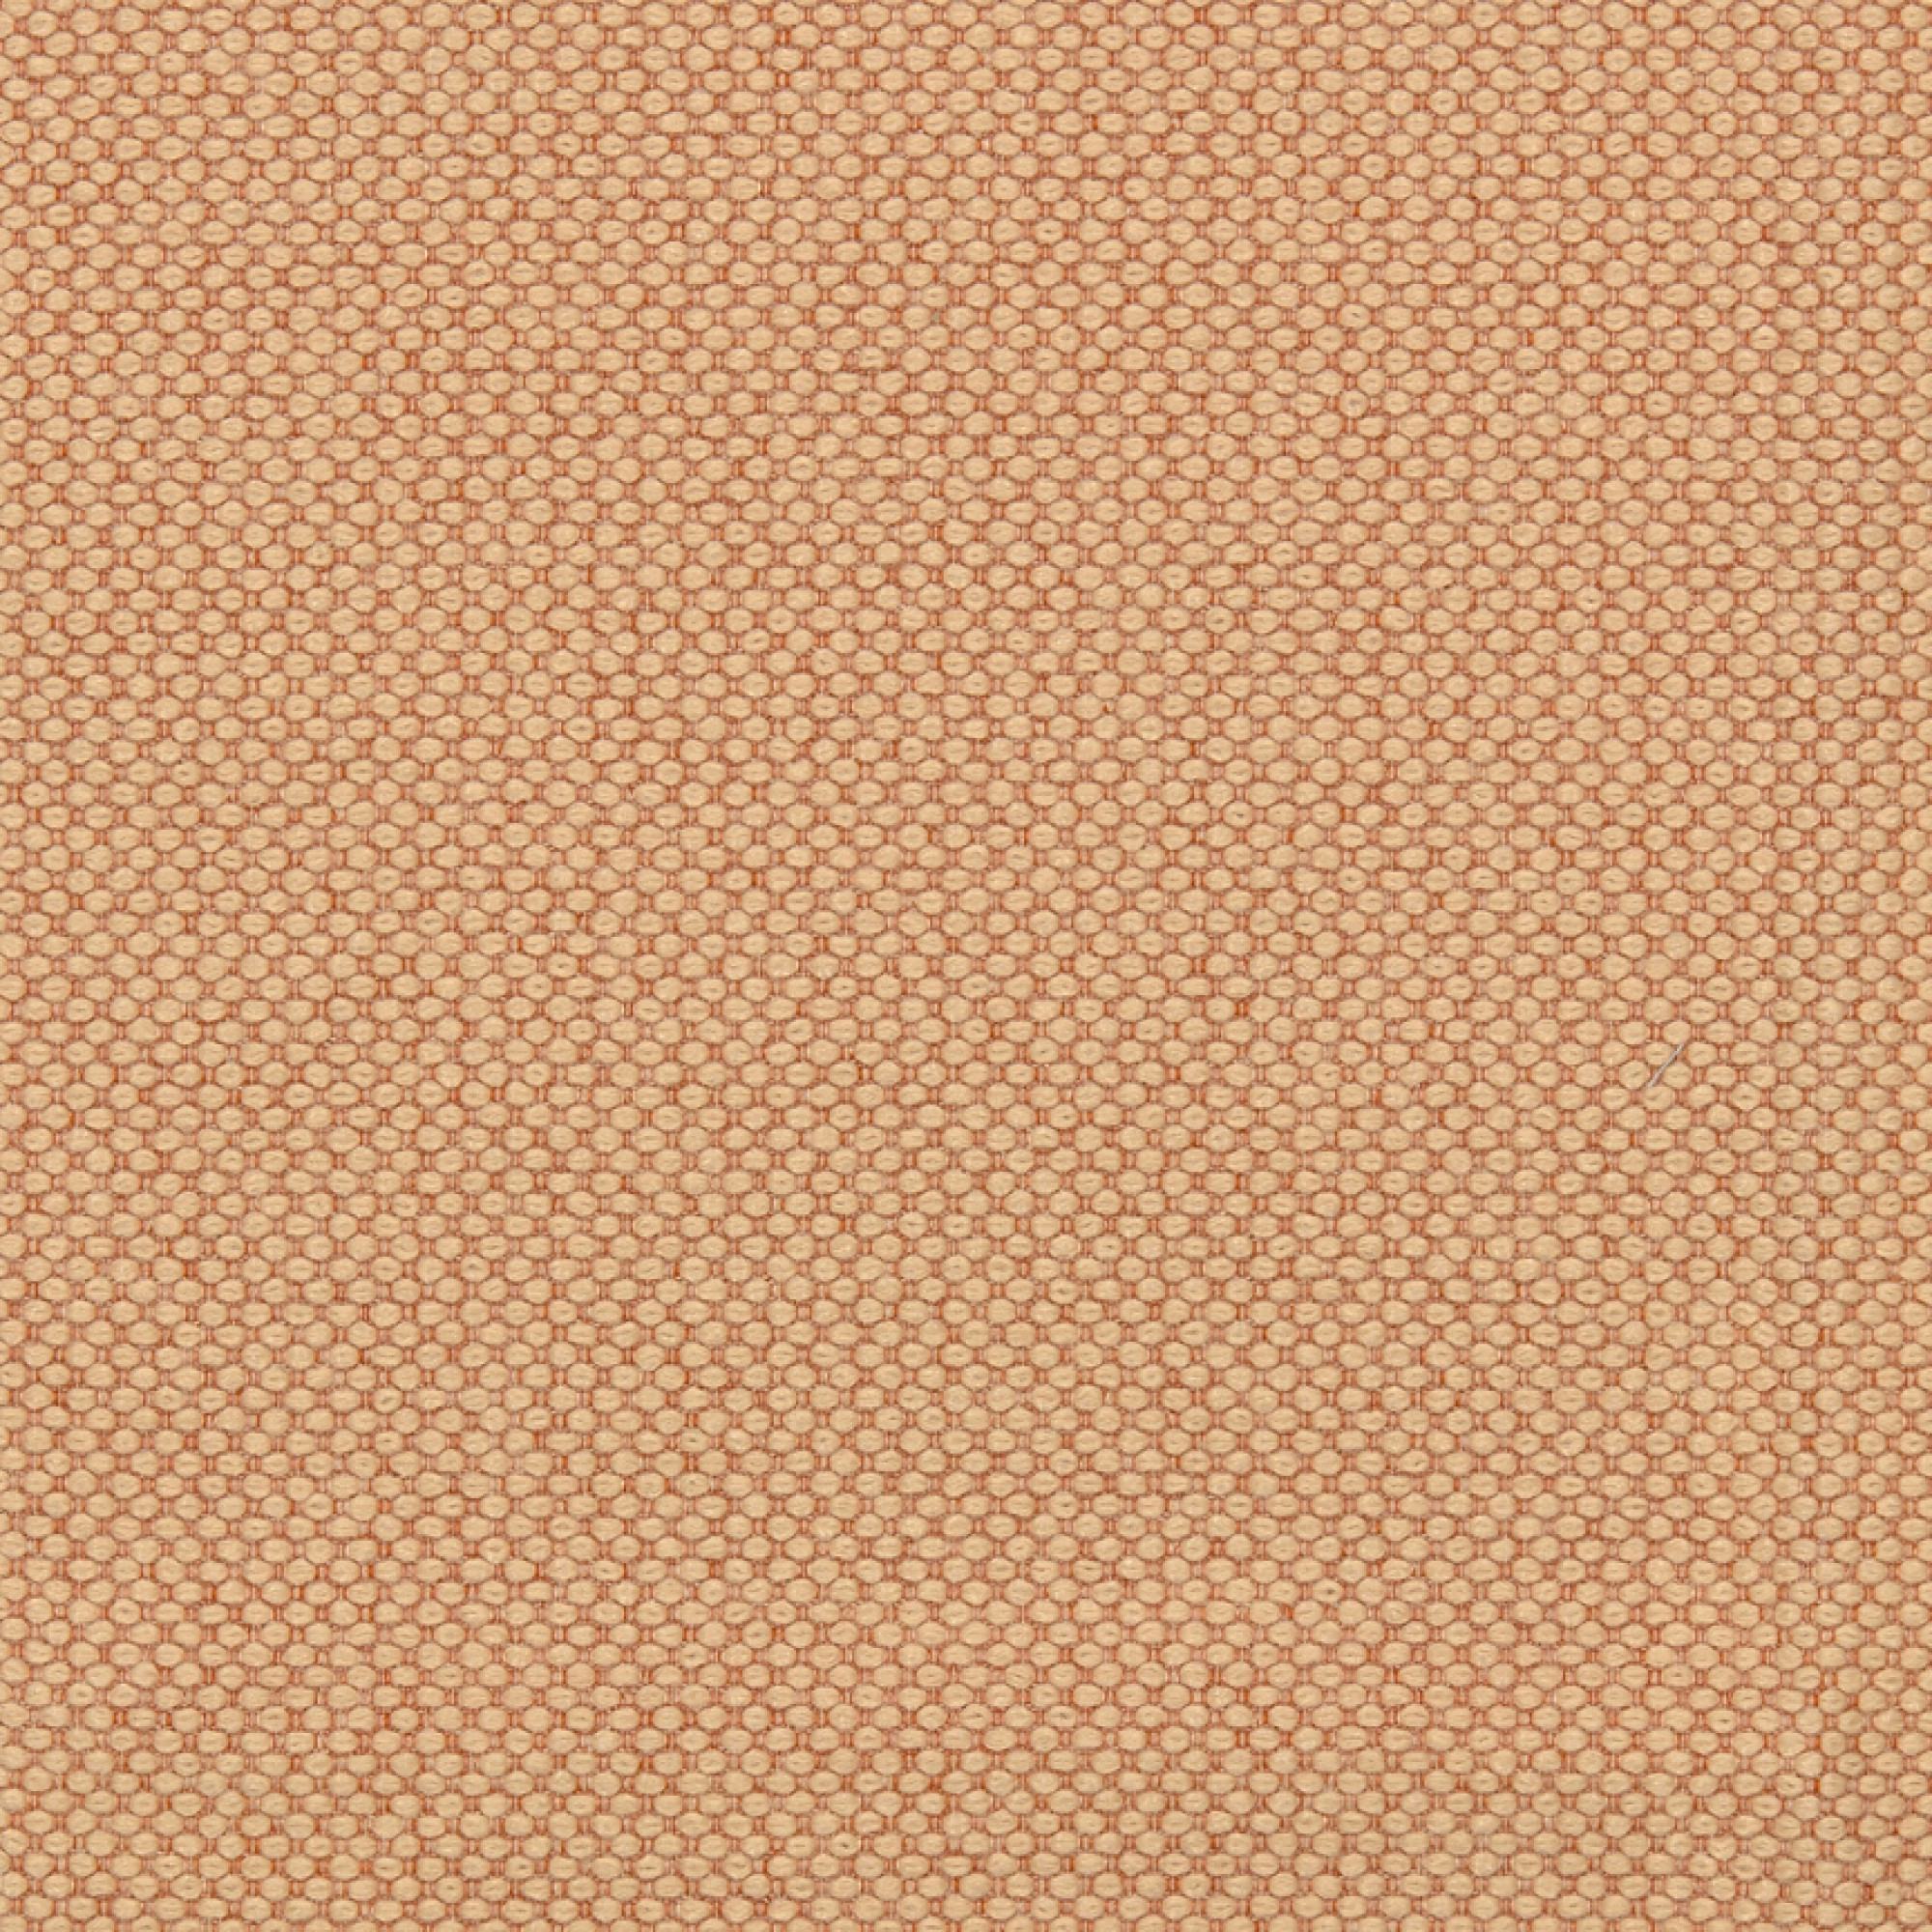 Fabric sample Merit 0031 orange